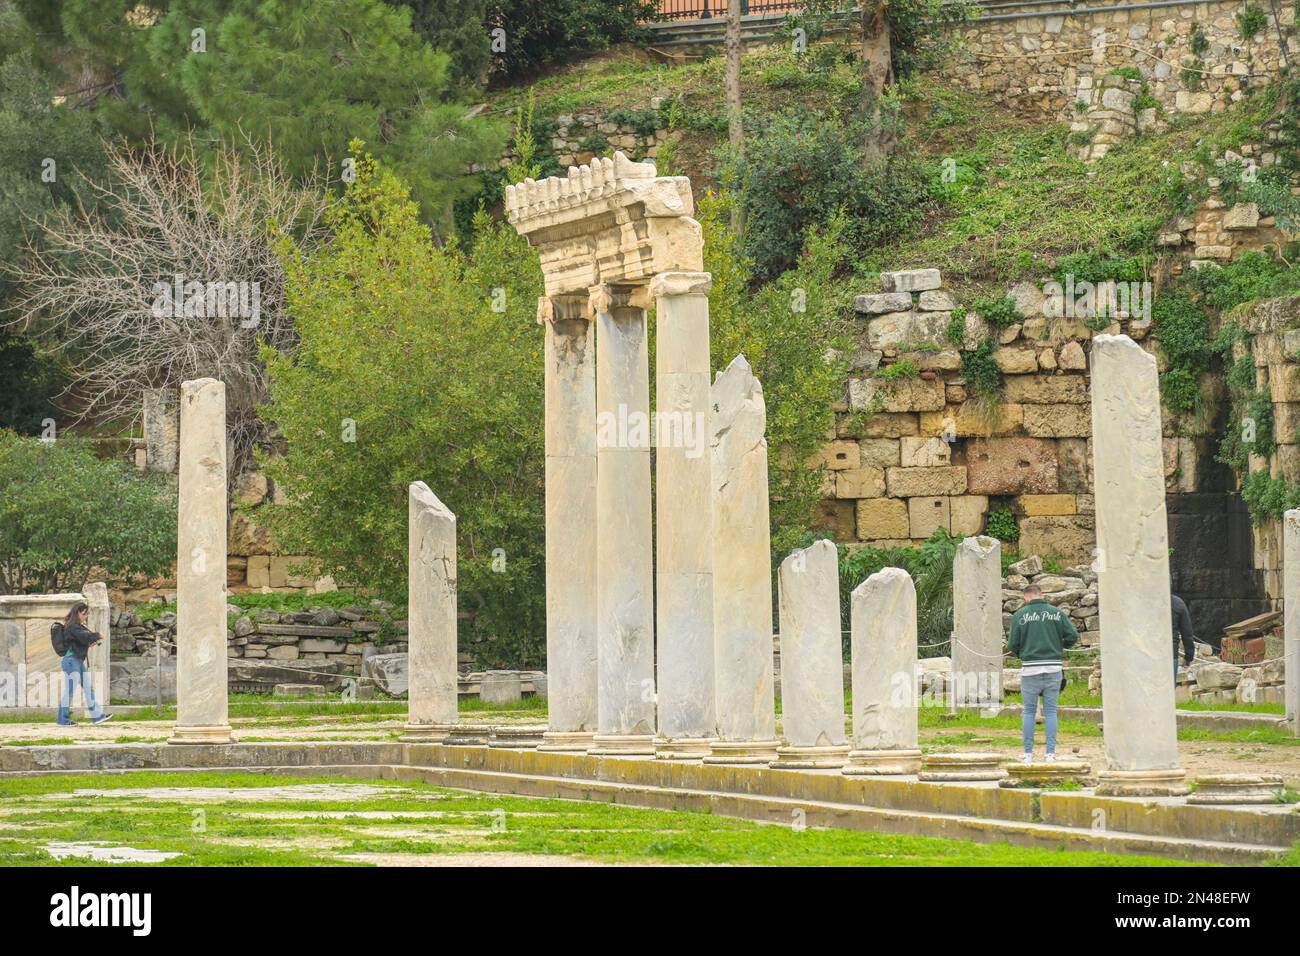 Rete von Säulengängen, Römische Agora, Athen, Griechenland Foto Stock